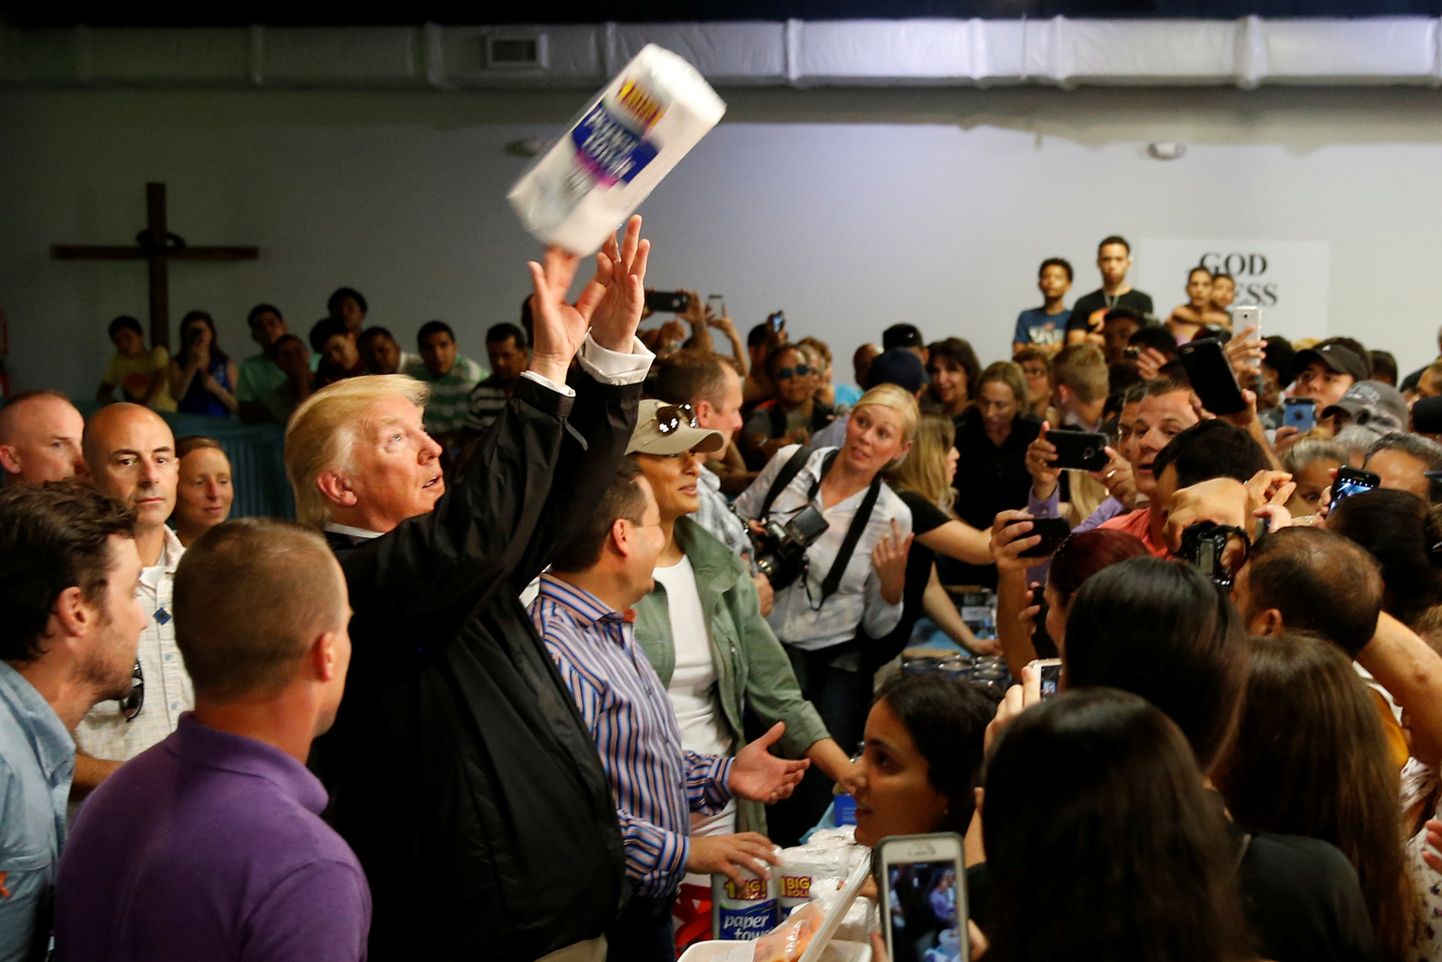 USA president Donald Trump Puerto Rico orkaanis kannatanud inimestega kohtumas.